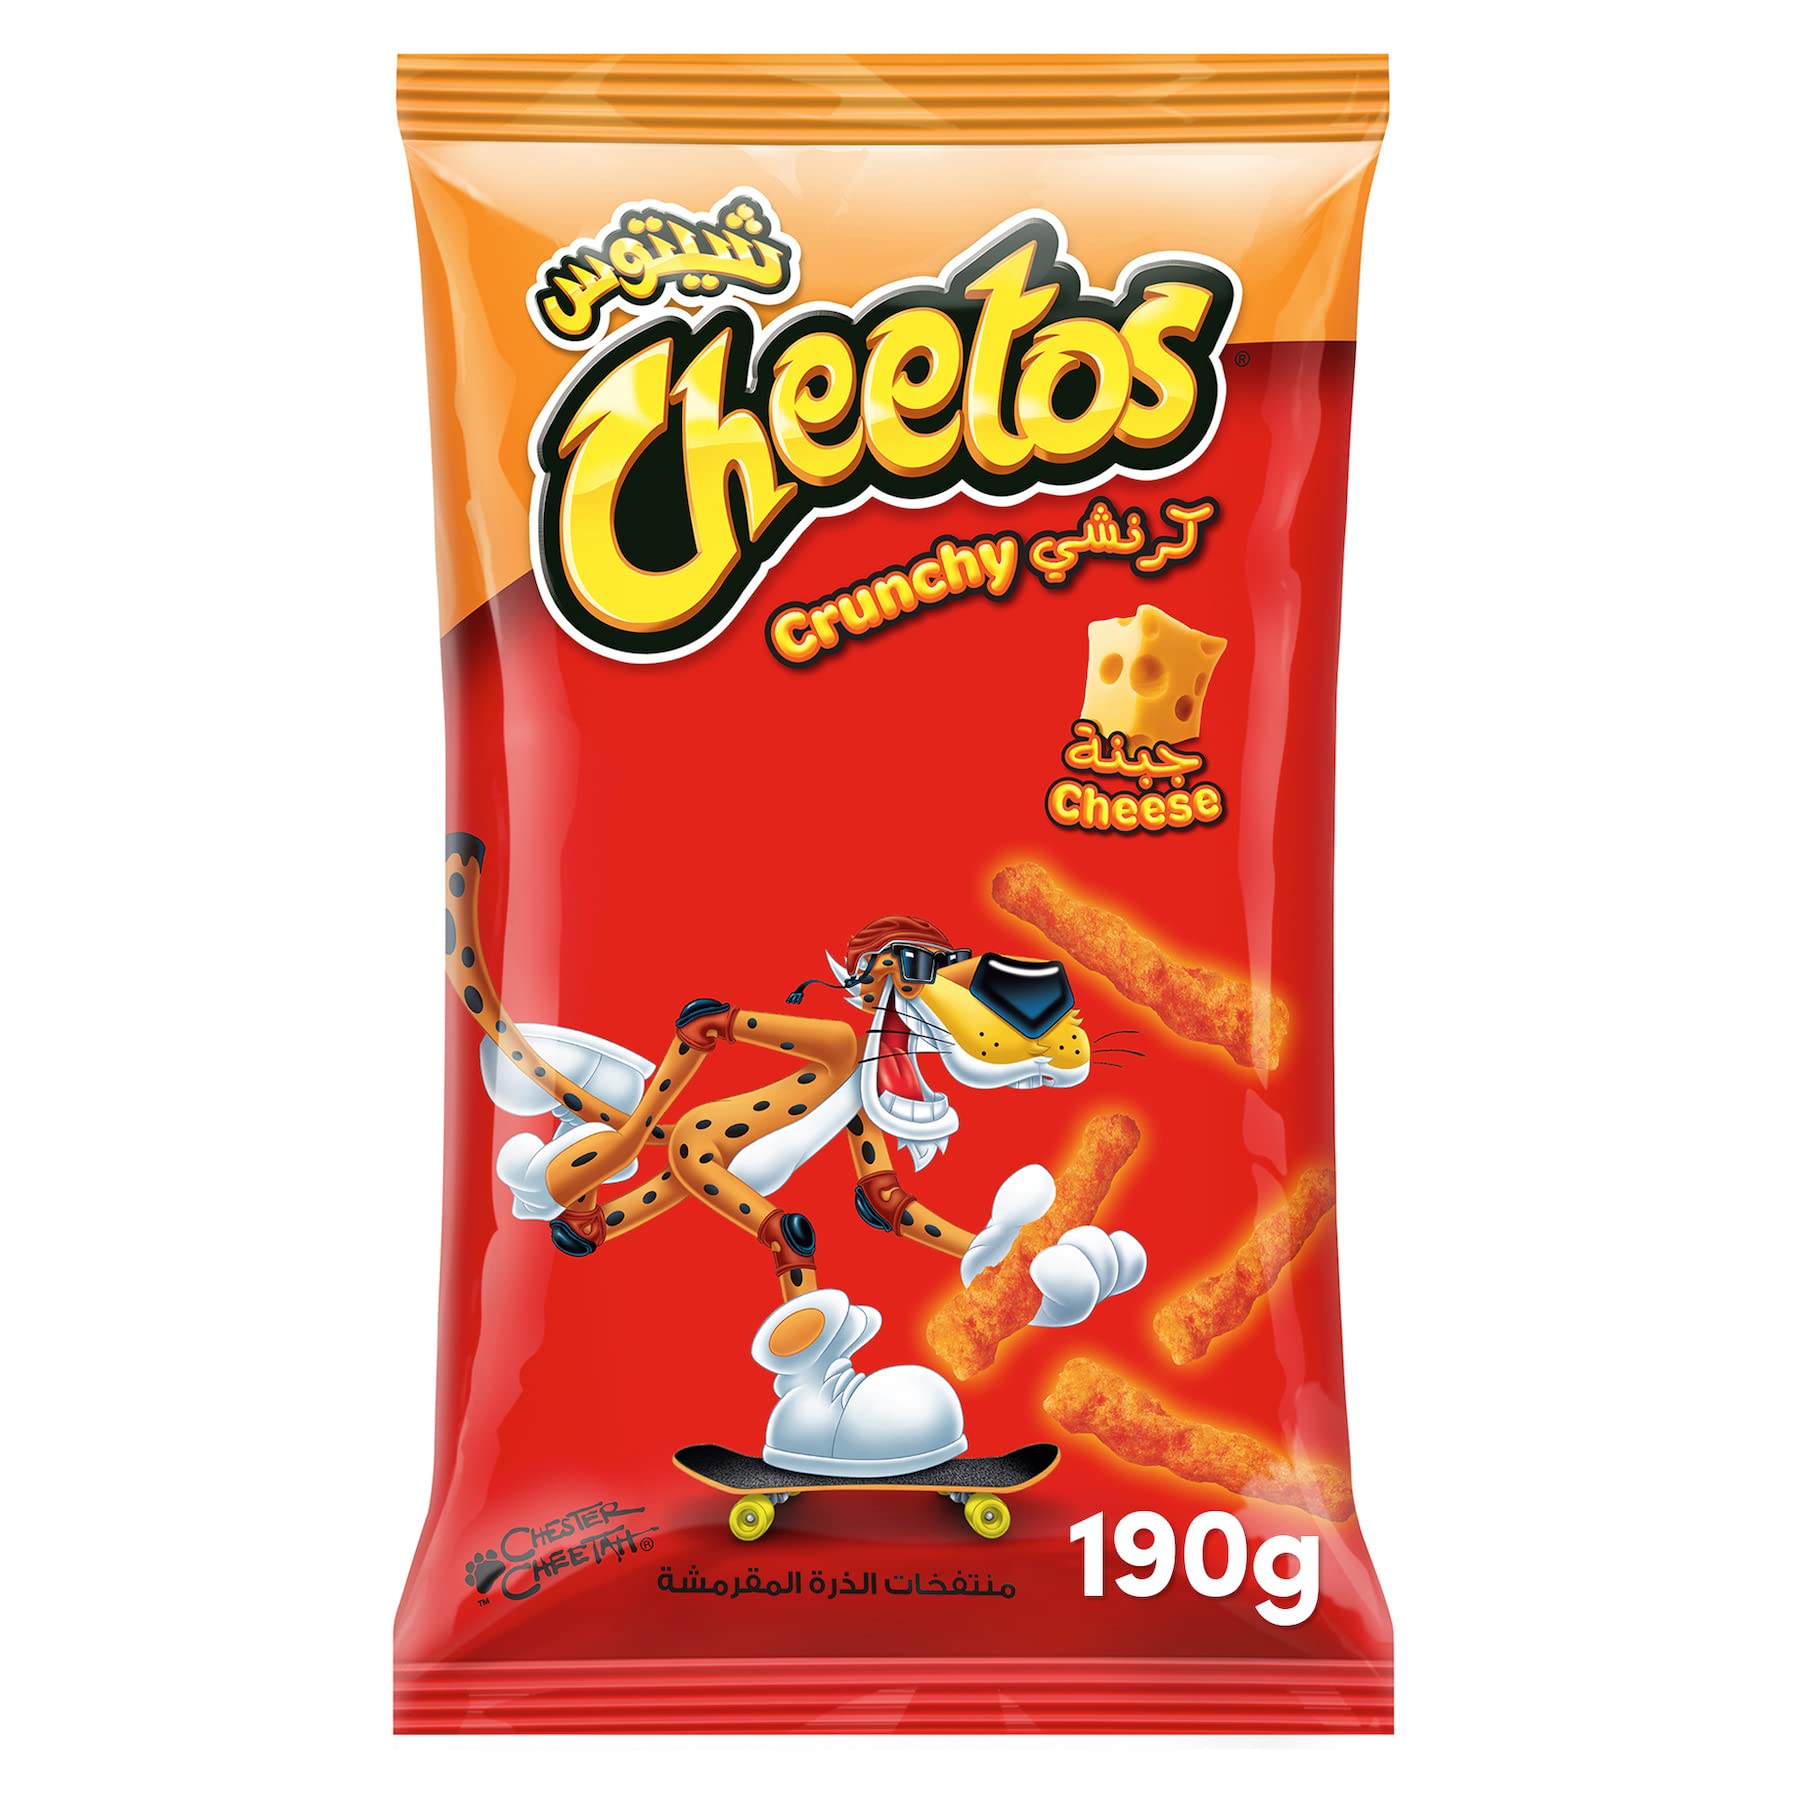 Cheetos Crunchy Cheese Orange - 190g